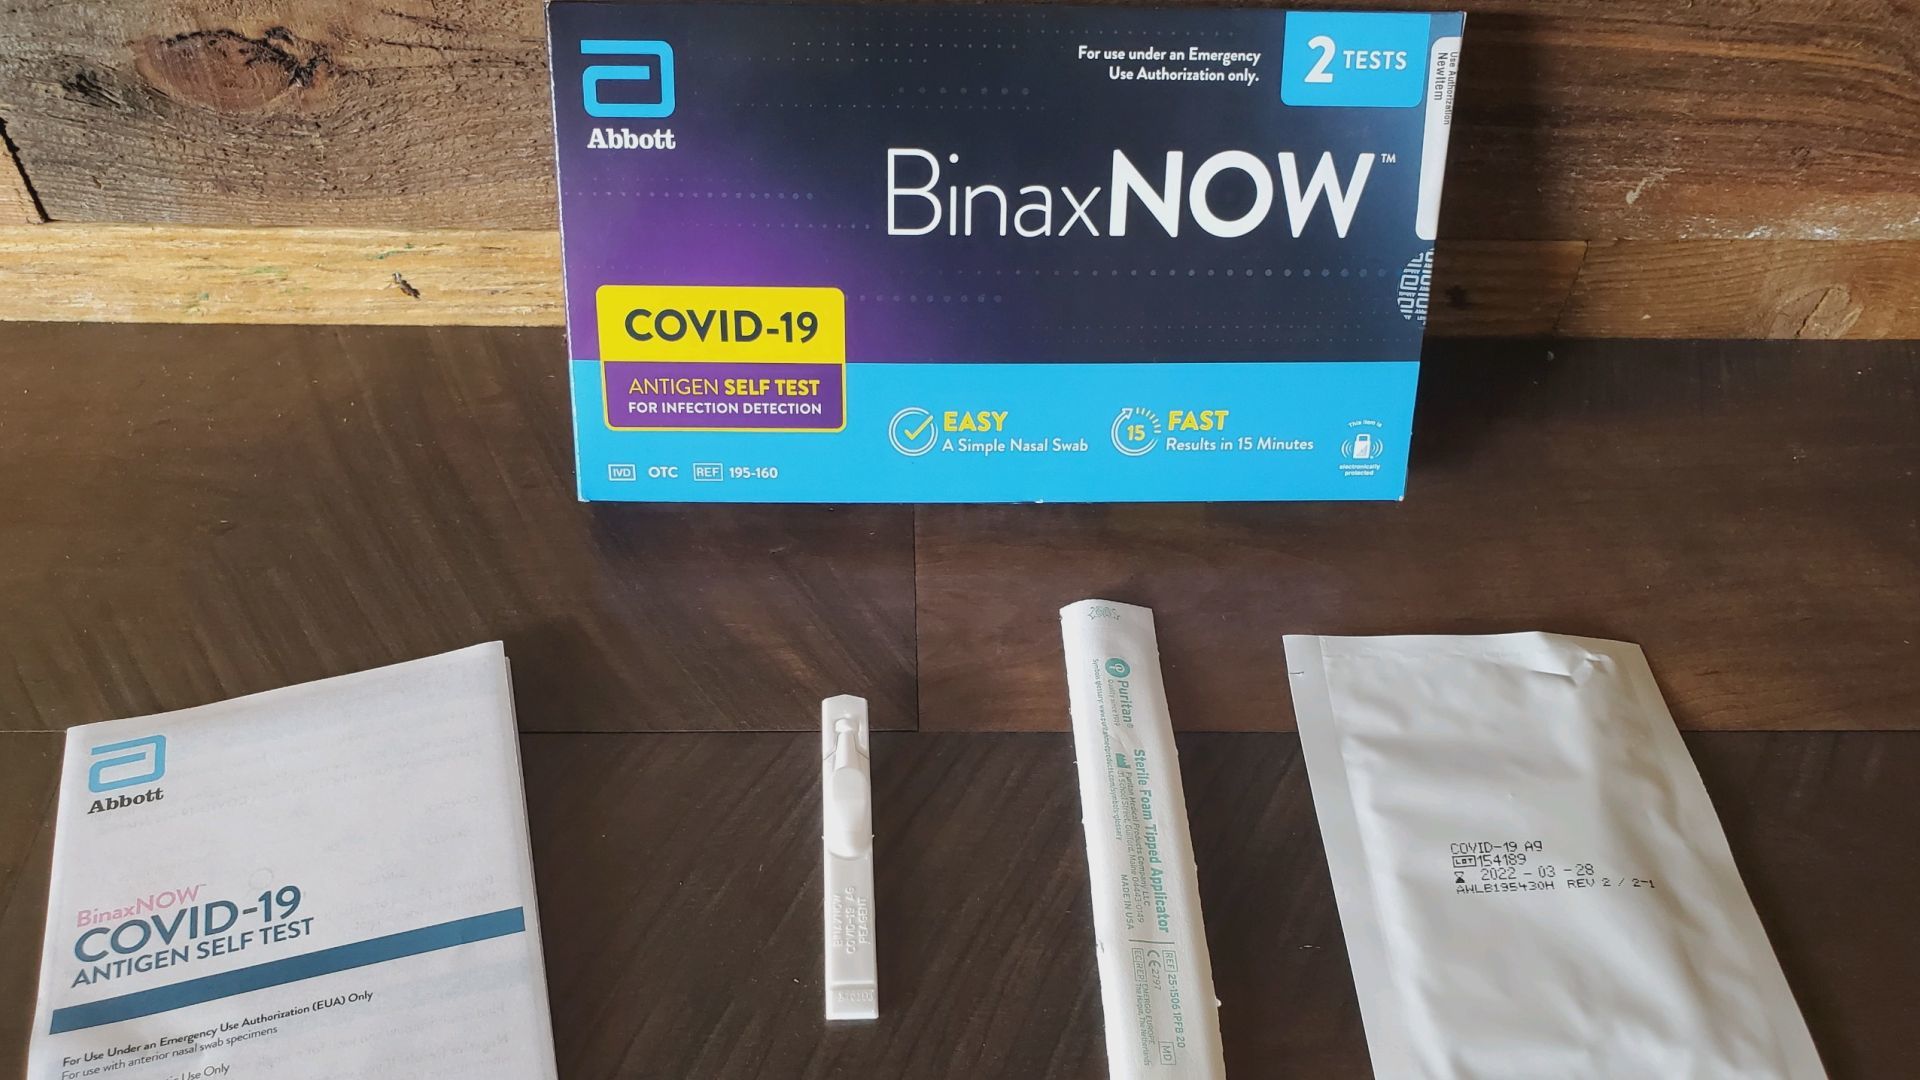 Abbott BinaxNOW At Home Antigen Self Test in Qatar